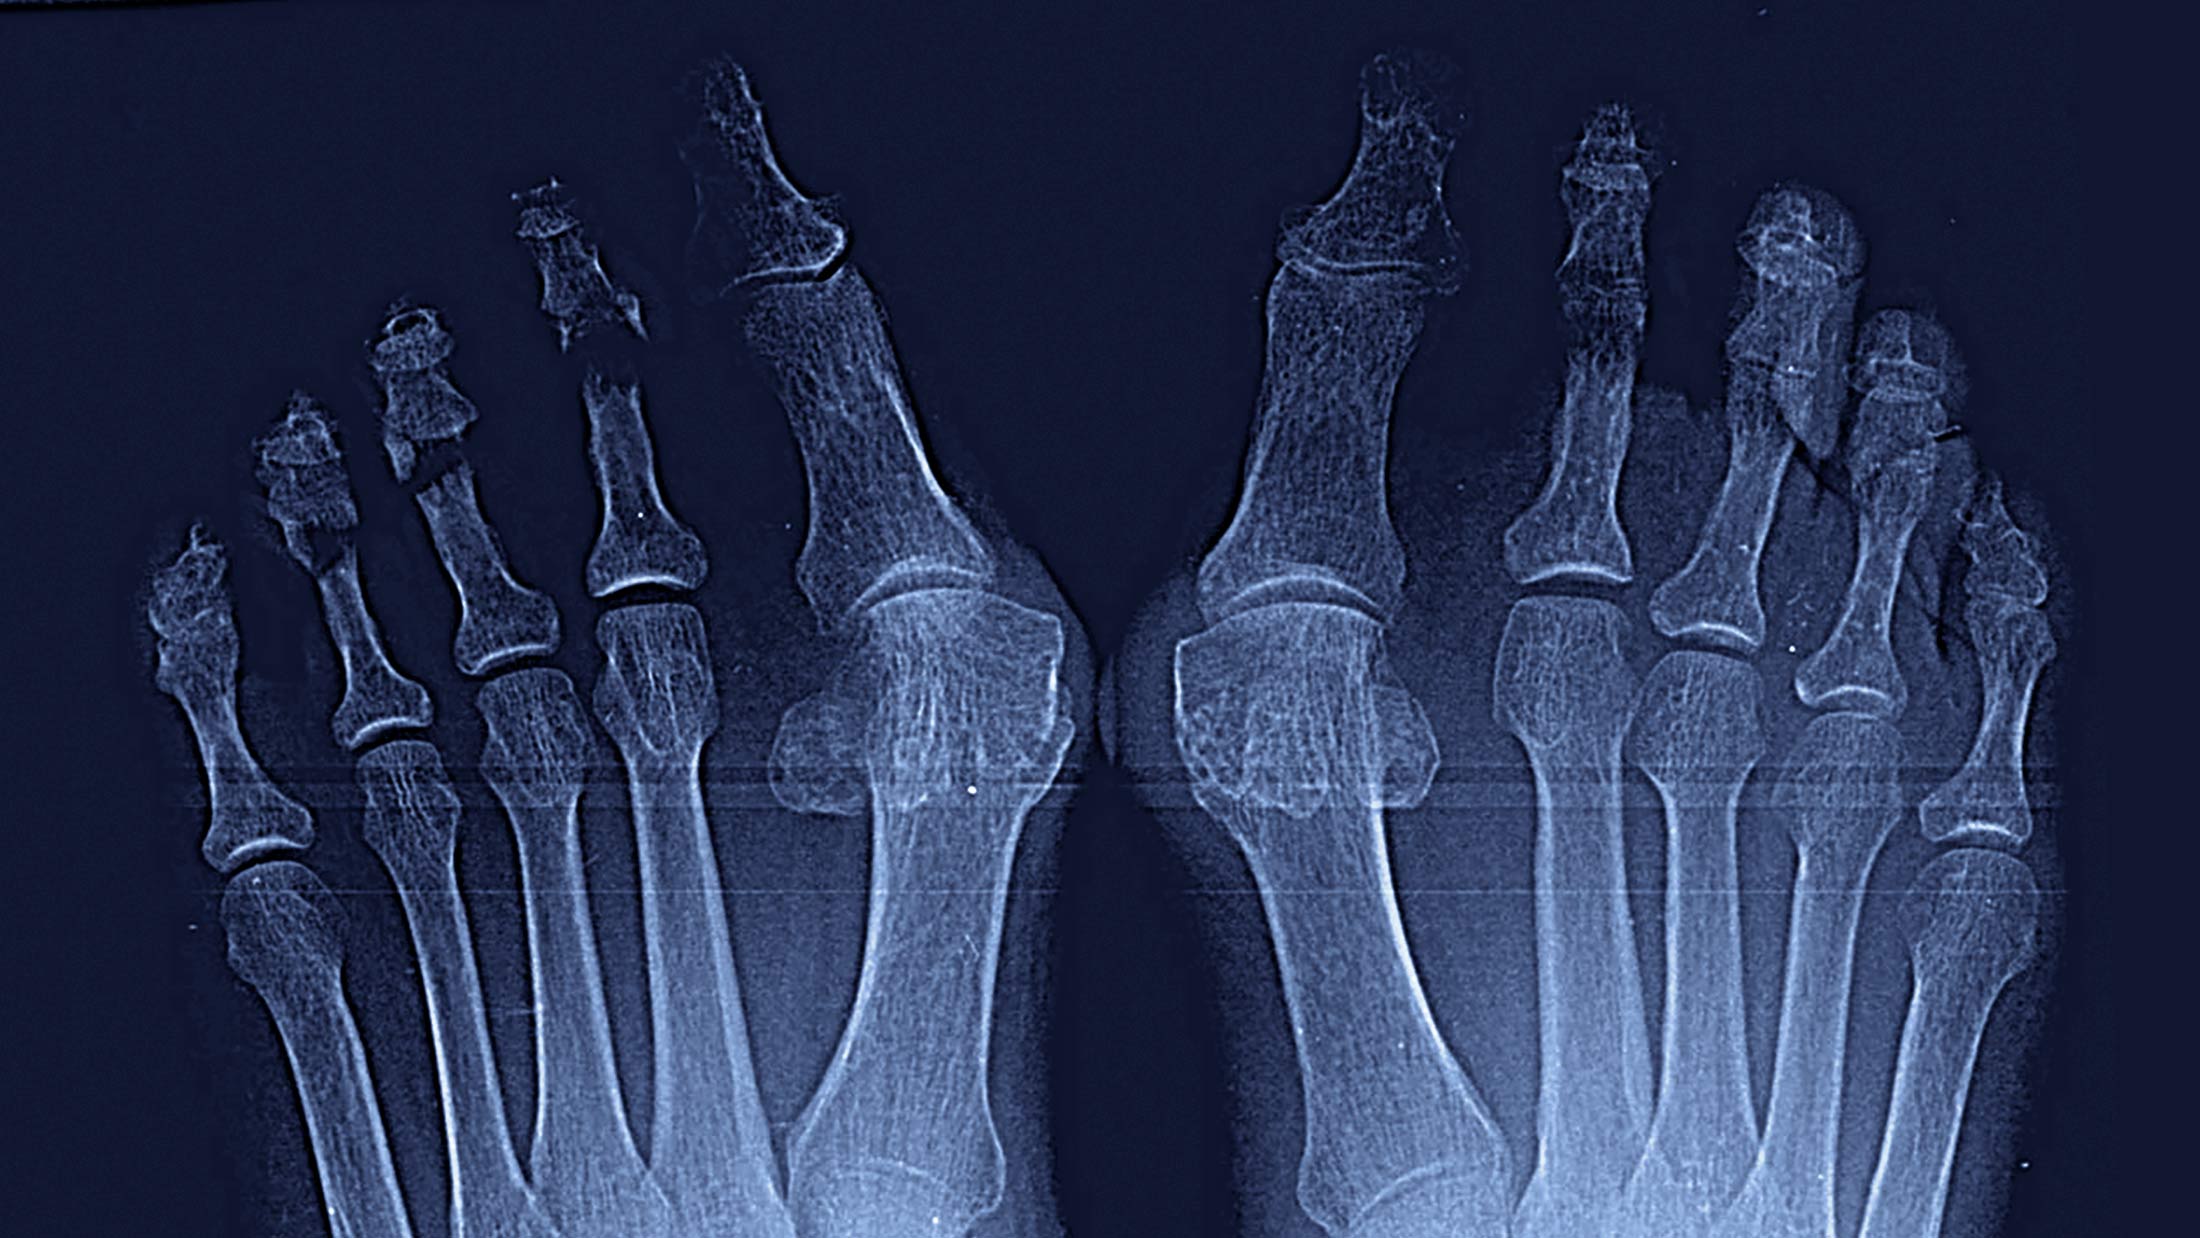 Maestro y Alejo Podología | Tratamiento quirúrgico de Juanetes y segundo dedo en martillo en ambos pies | Preoperatorio Portada